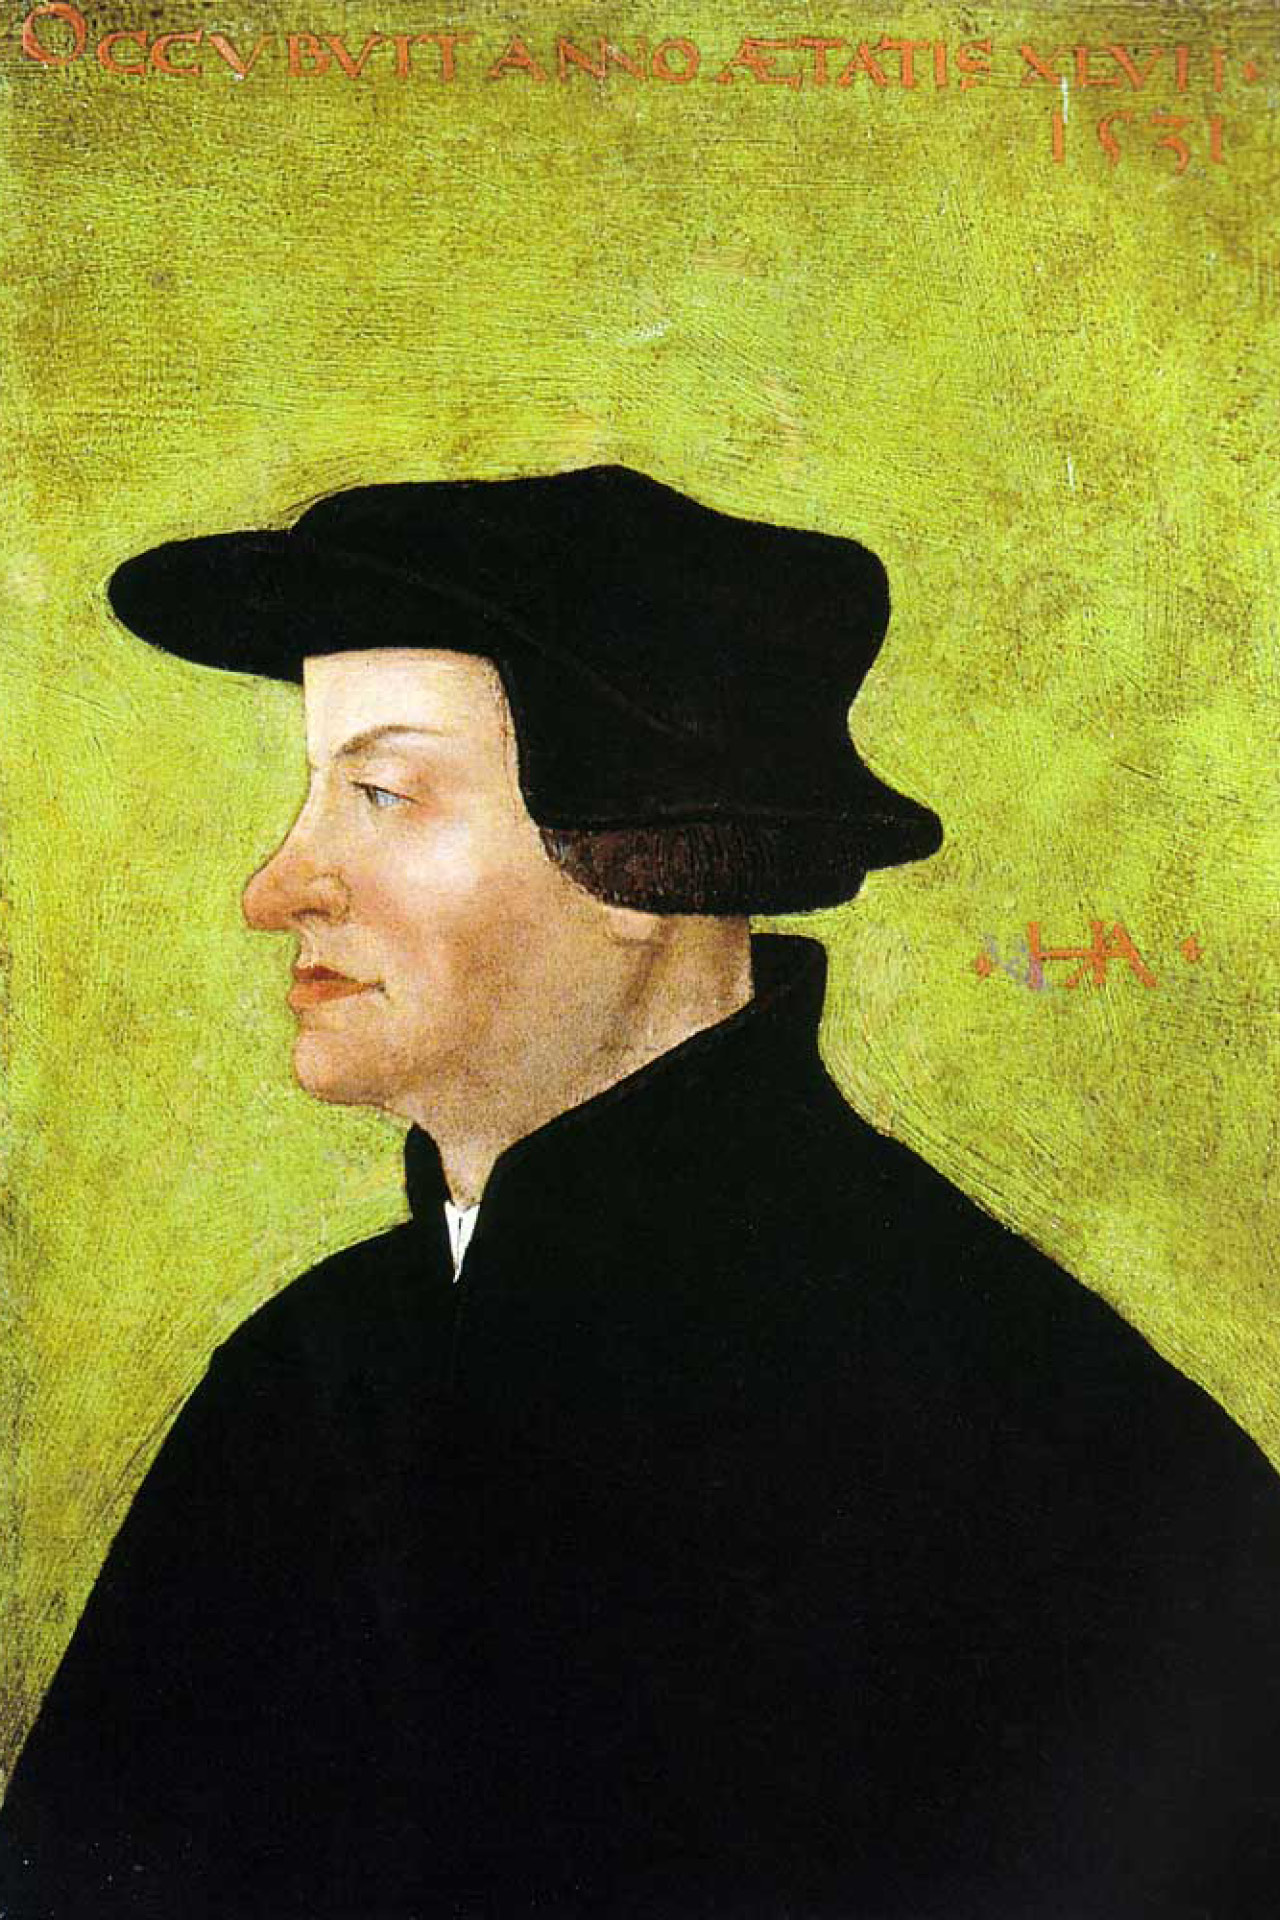 Der Zürcher Reformator Ulrich Zwingli auf einem Porträt von Hans Asper, entstanden nach dem Tod Zwinglis. etwa 1531.